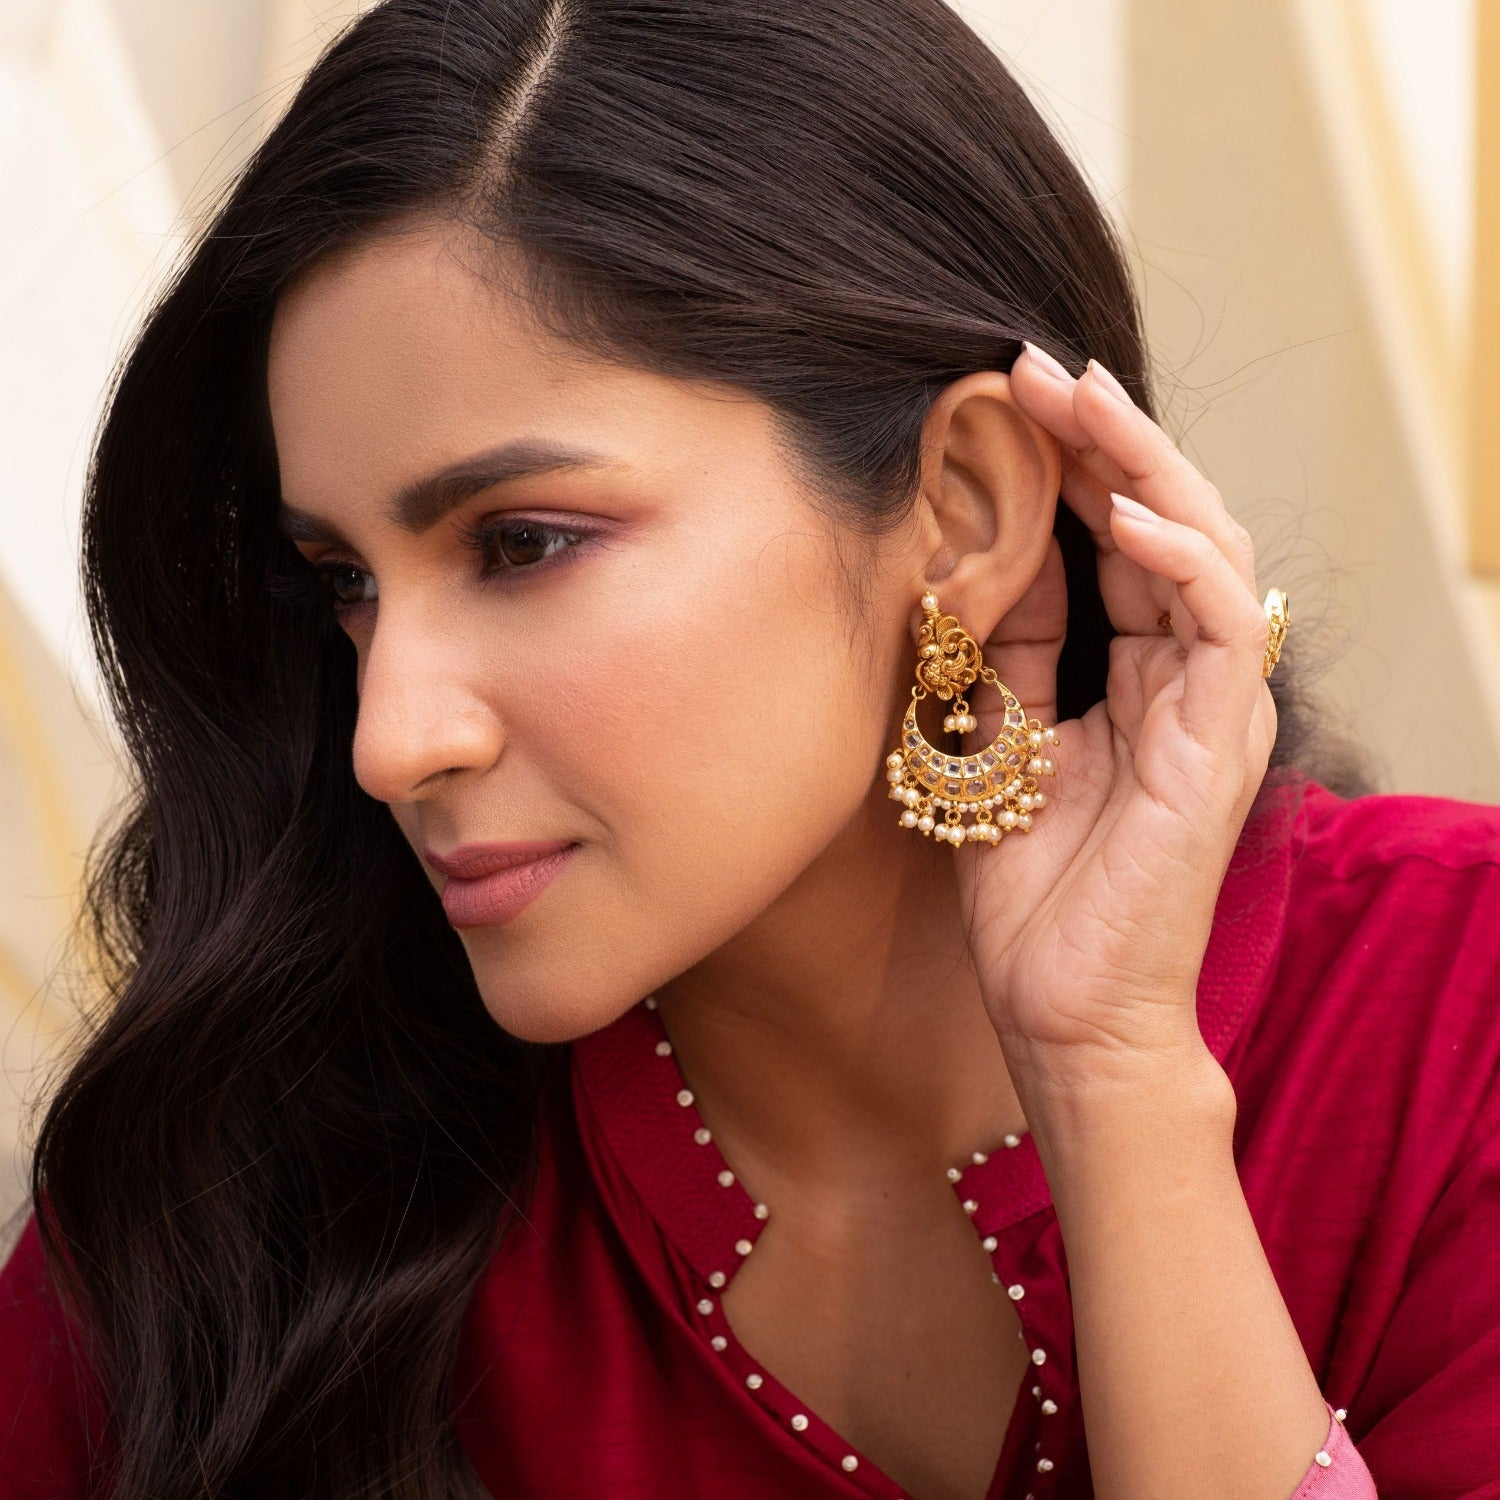 Chandbali Earrings - Buy Chandbali Earrings Designs Online at Best Prices  in India | Flipkart.com